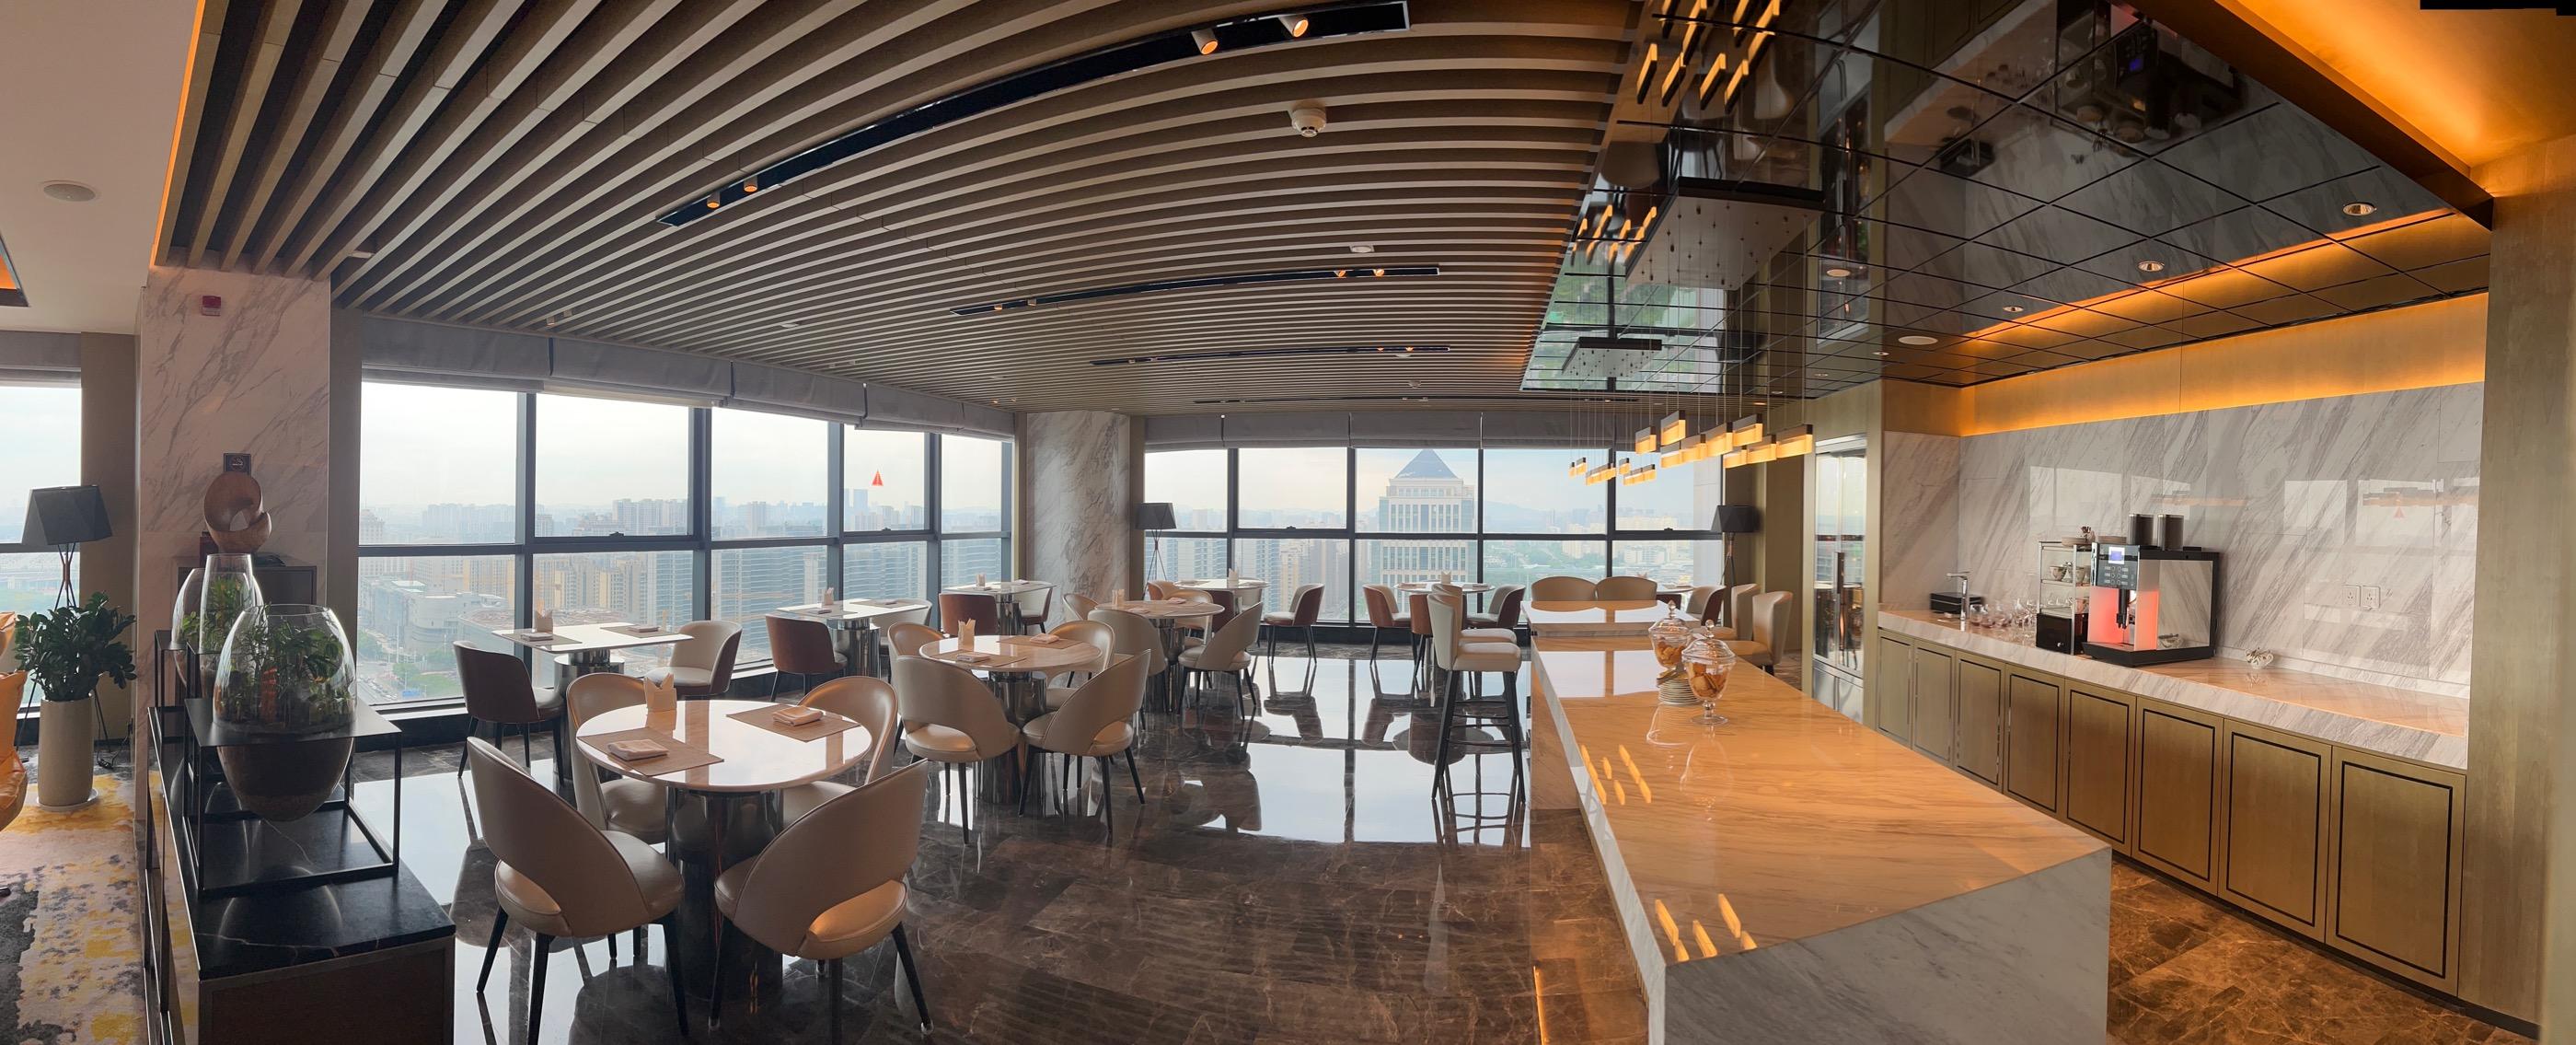 Pullman Suzhou Zhonghui Executive Club Lounge Overview